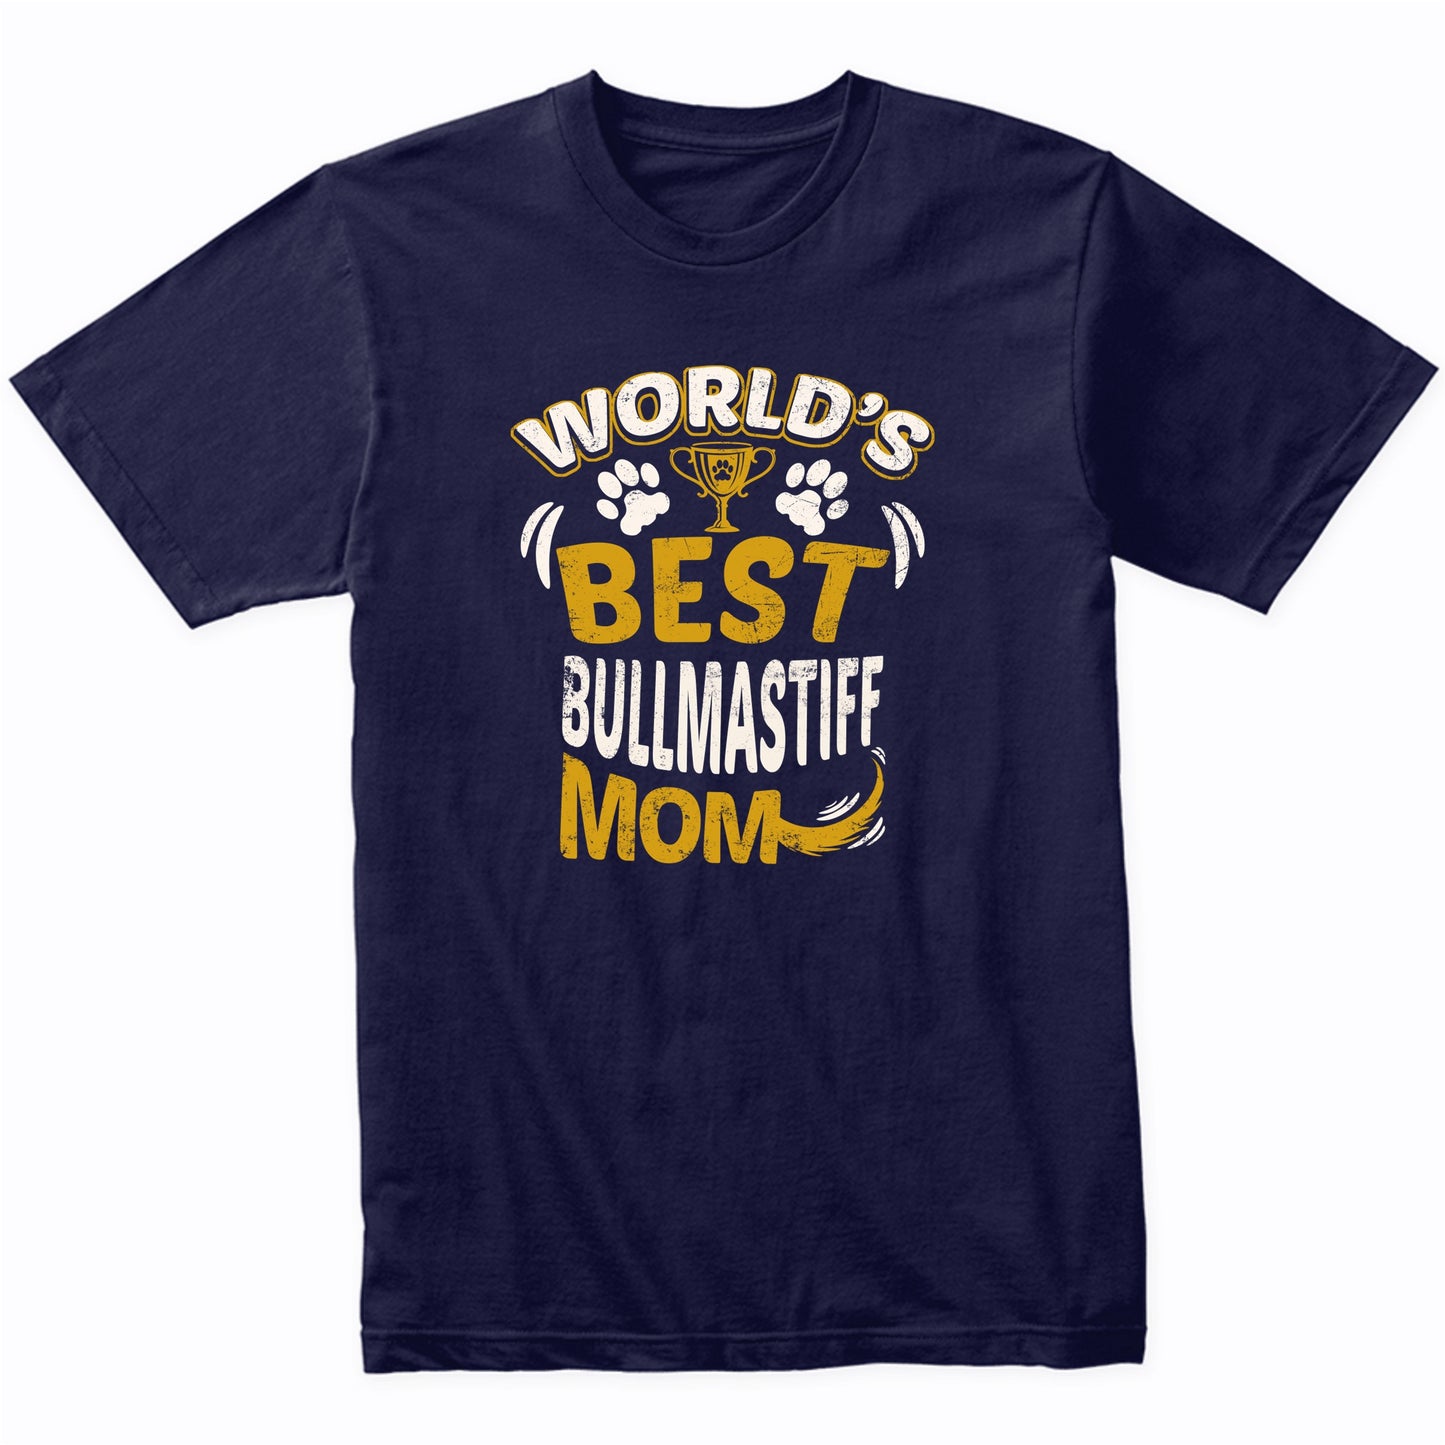 World's Best Bullmastiff Mom Graphic T-Shirt